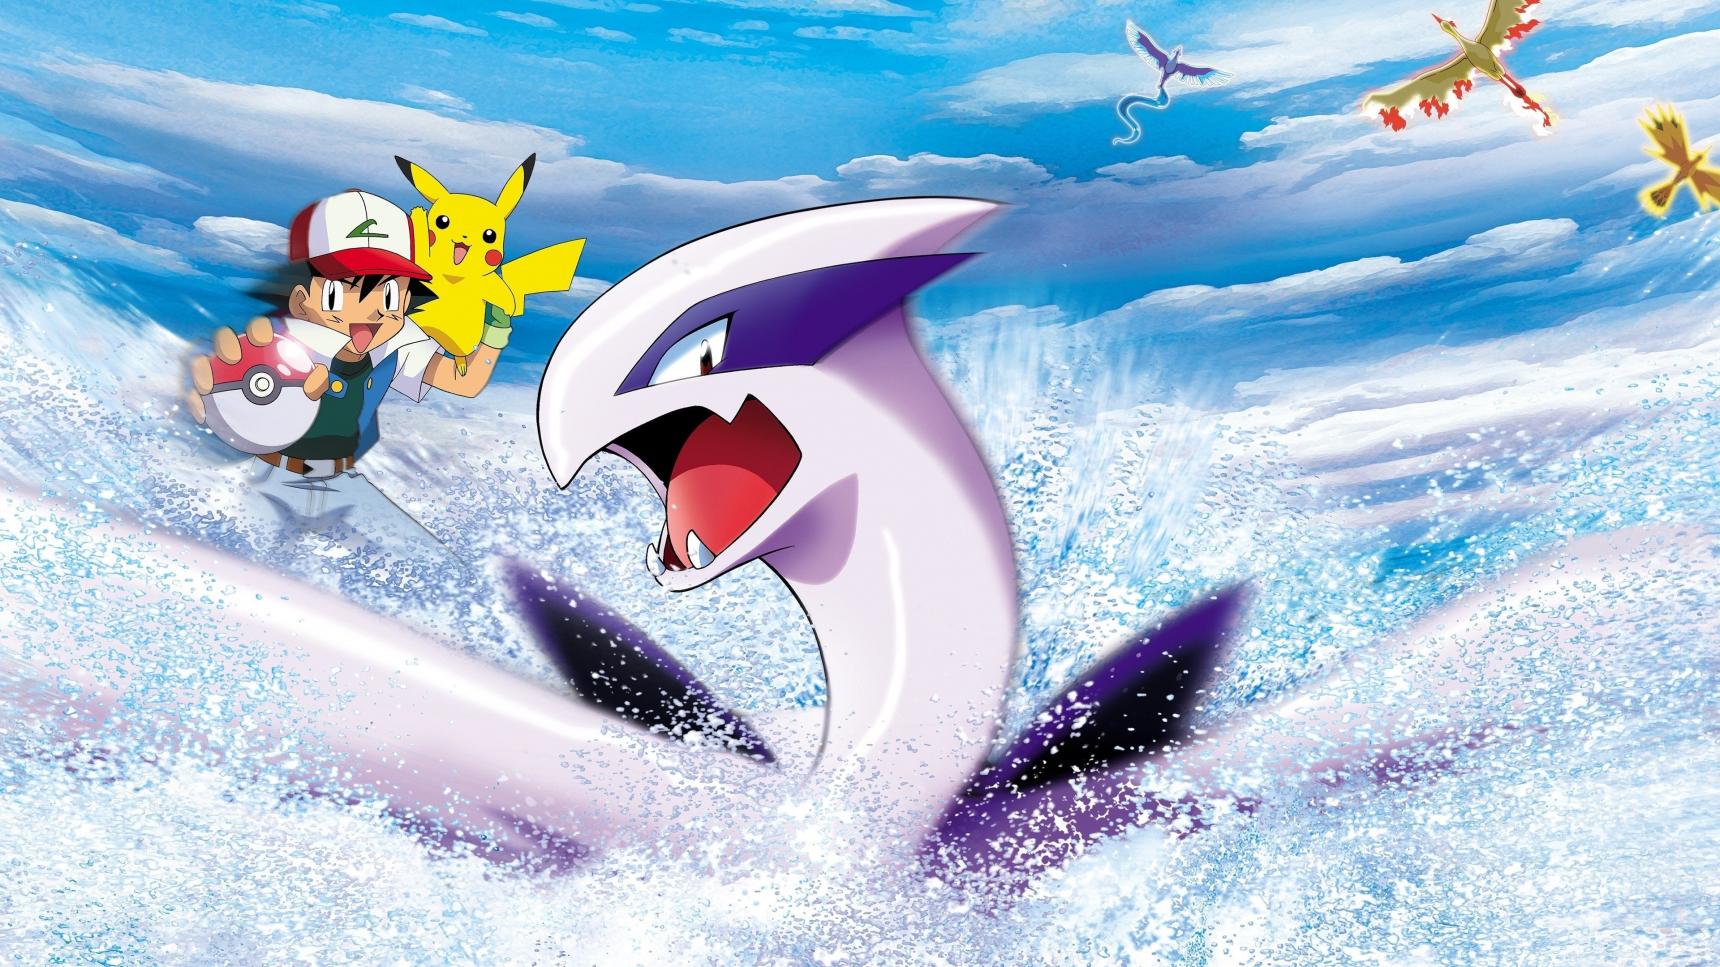 poster de Pokémon 2: El poder de uno